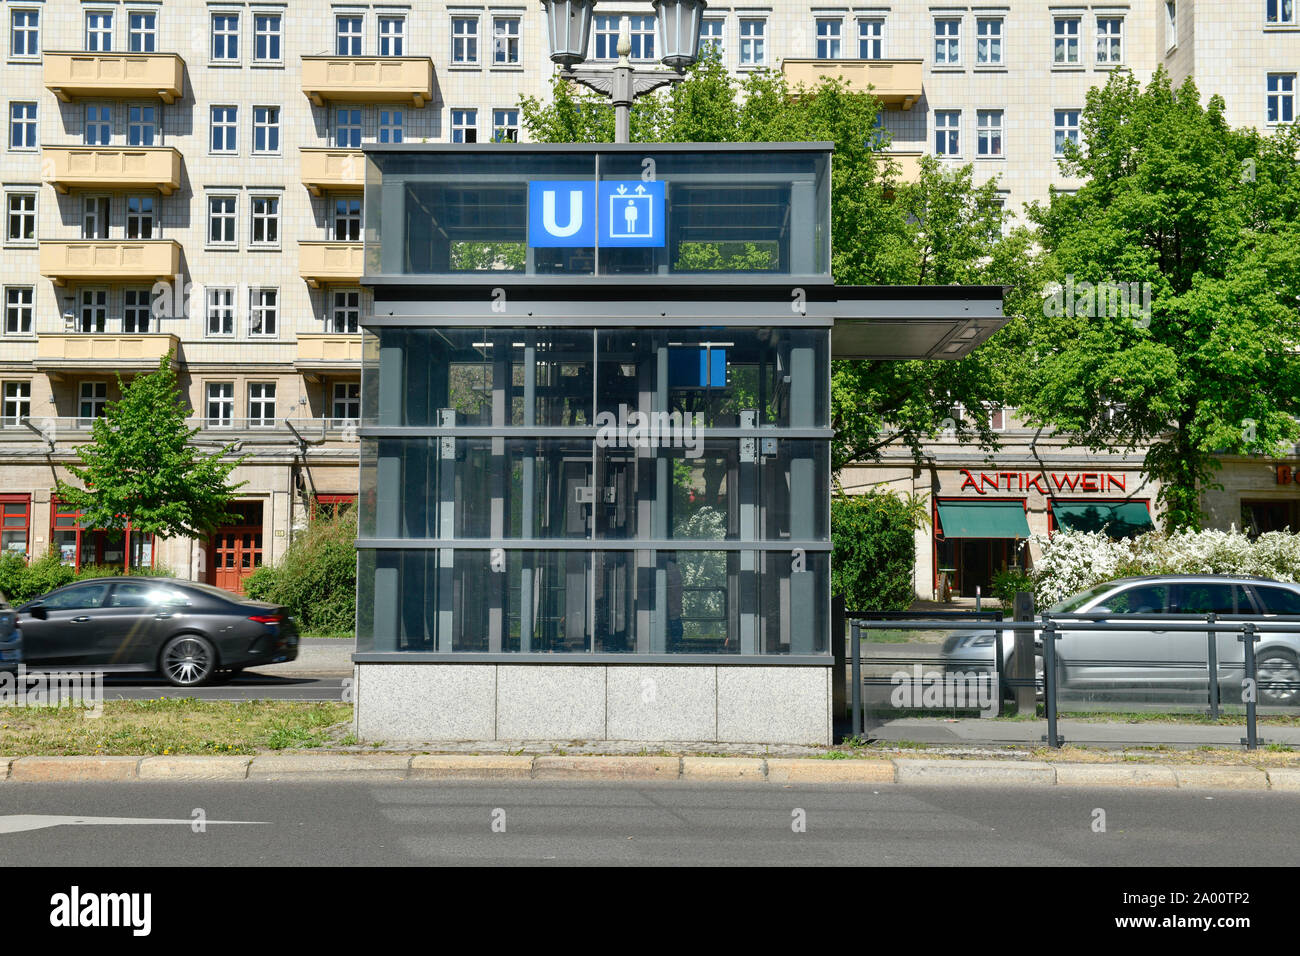 U-Bahn-Aufzug, Karl-Marx-Allee, Friedrichshain, Berlin, Deutschland Stock Photo